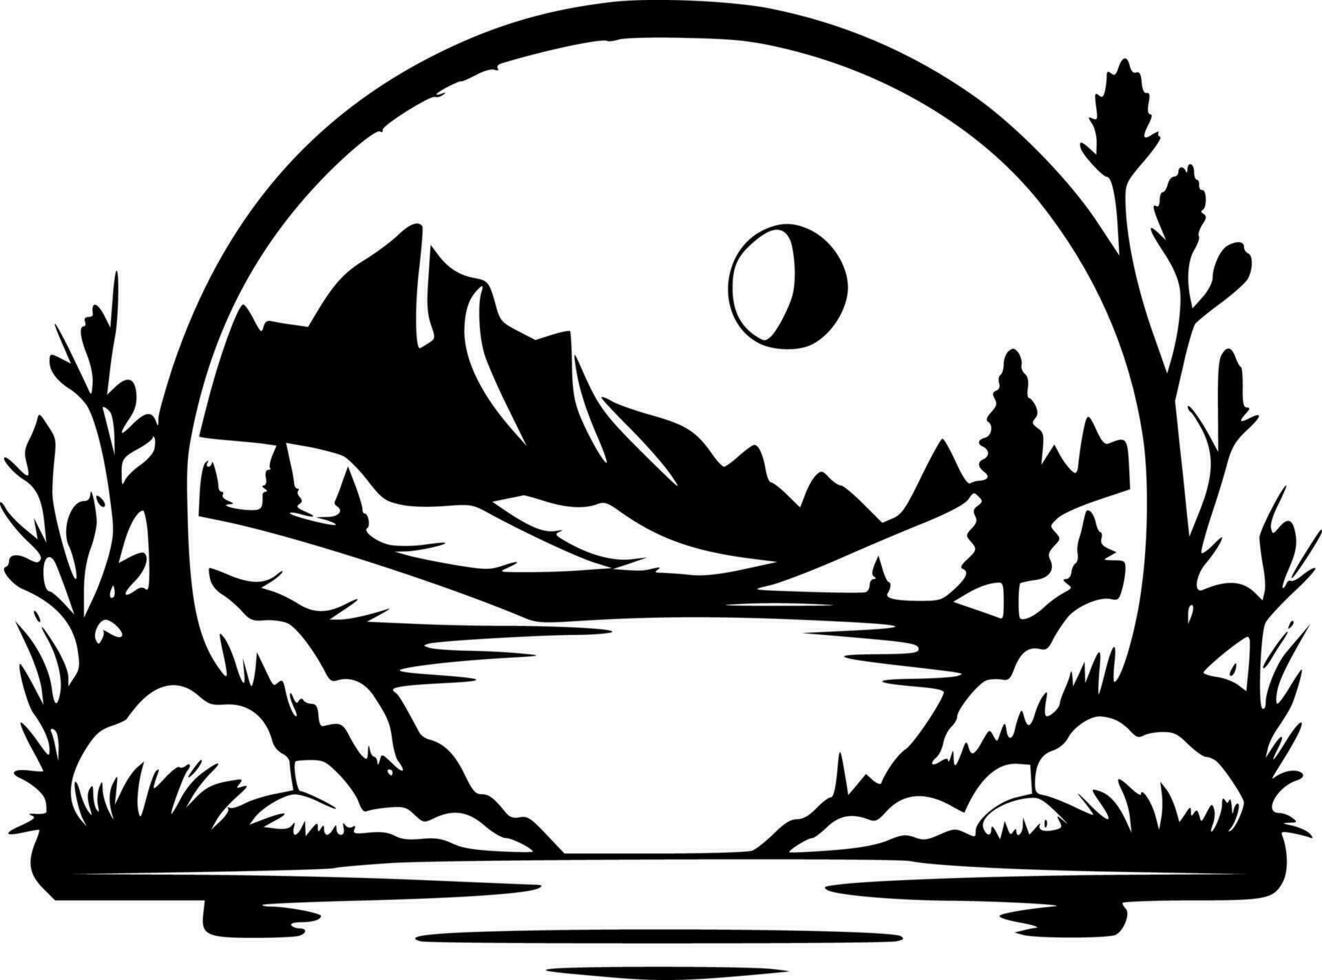 frontière - noir et blanc isolé icône - vecteur illustration